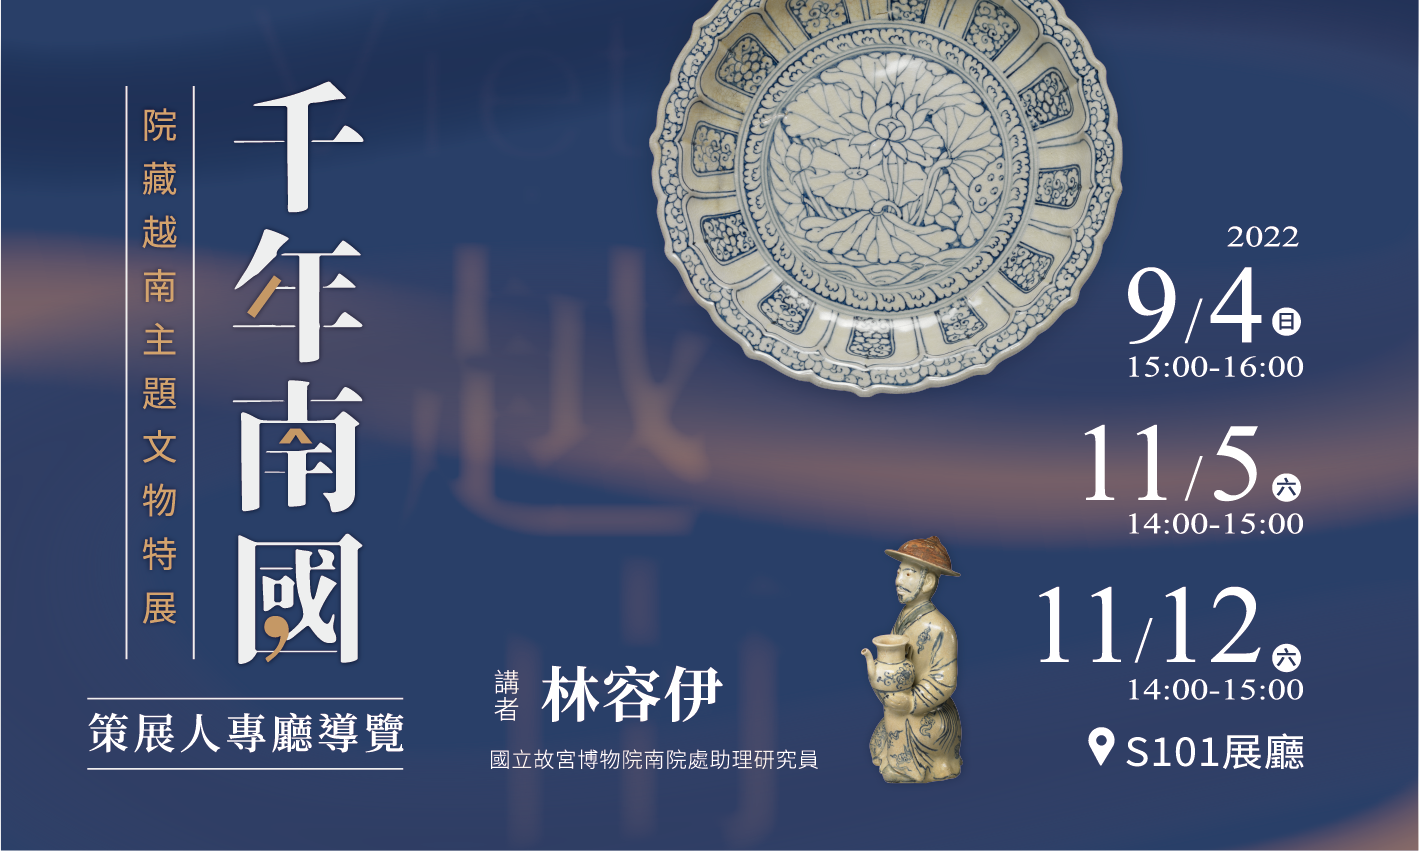 千年南國 院藏越南主題文物特展—策展人專廳導覽